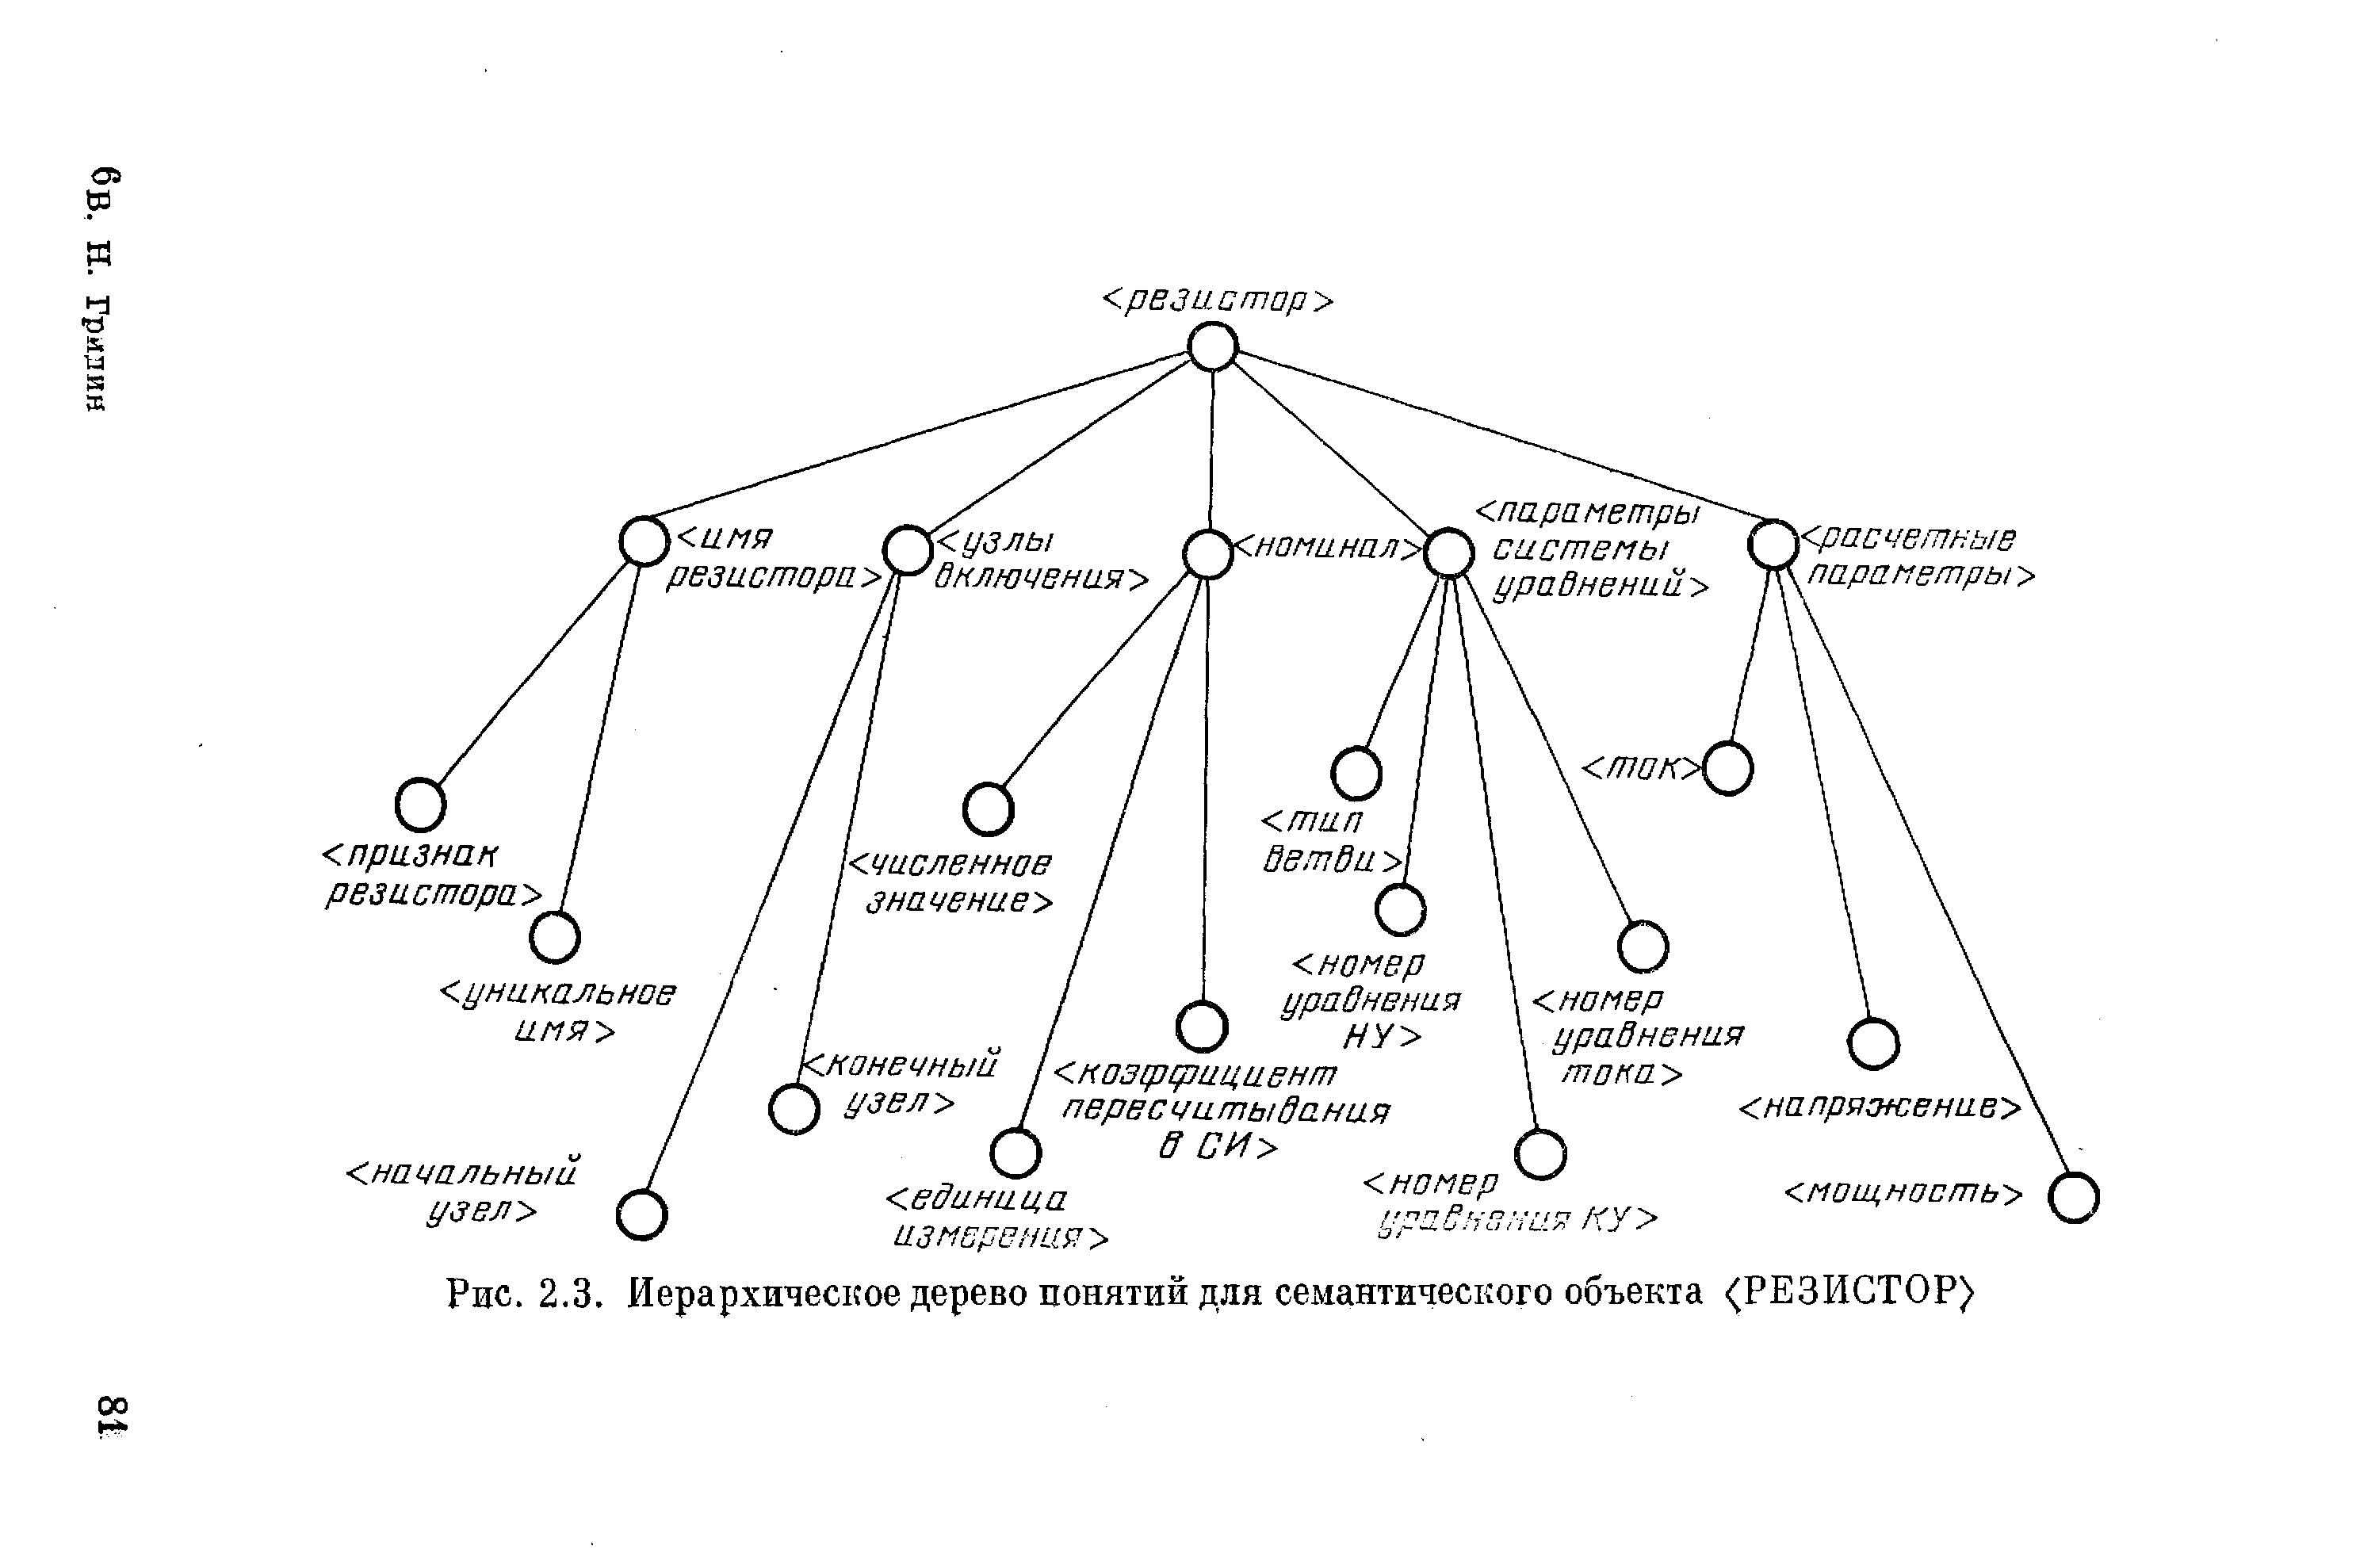 Рис. 2.3. Иерархическое дерево понятий для семантического объекта <РЕЗИСТОР)
